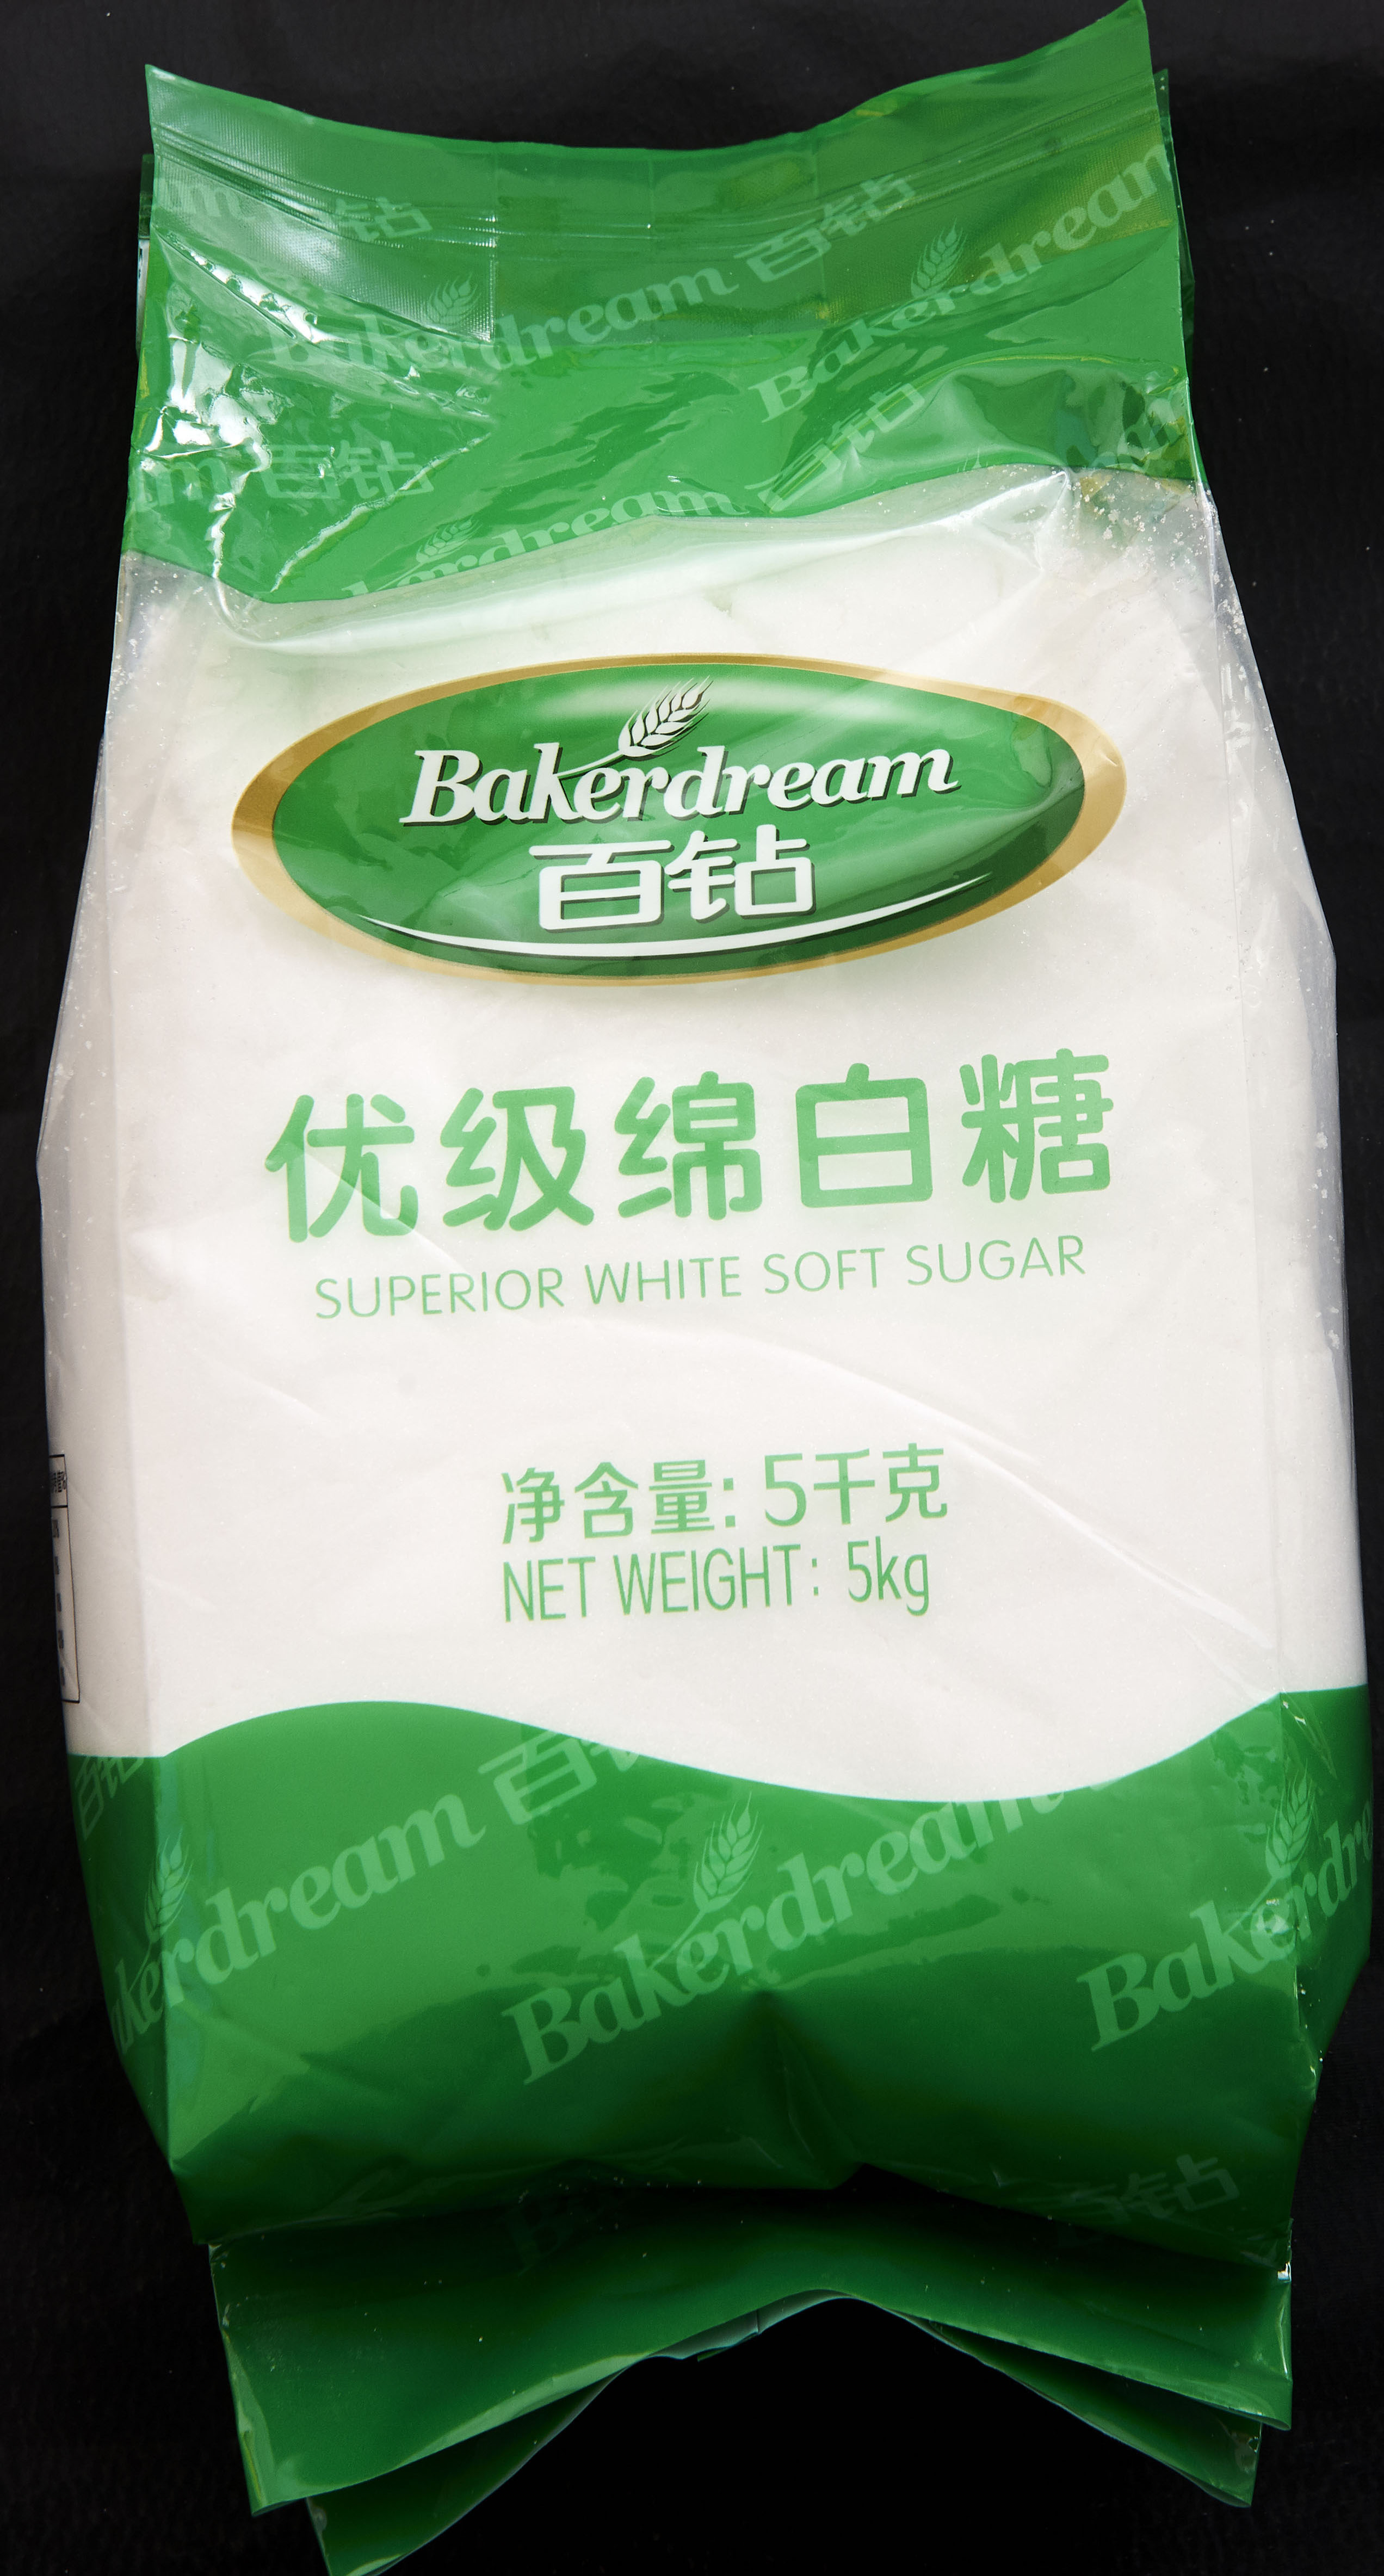 食用白糖 小包装细白砂糖400g 优质白糖批发 烘焙用糖原料调味品批发价格 白糖-食品商务网